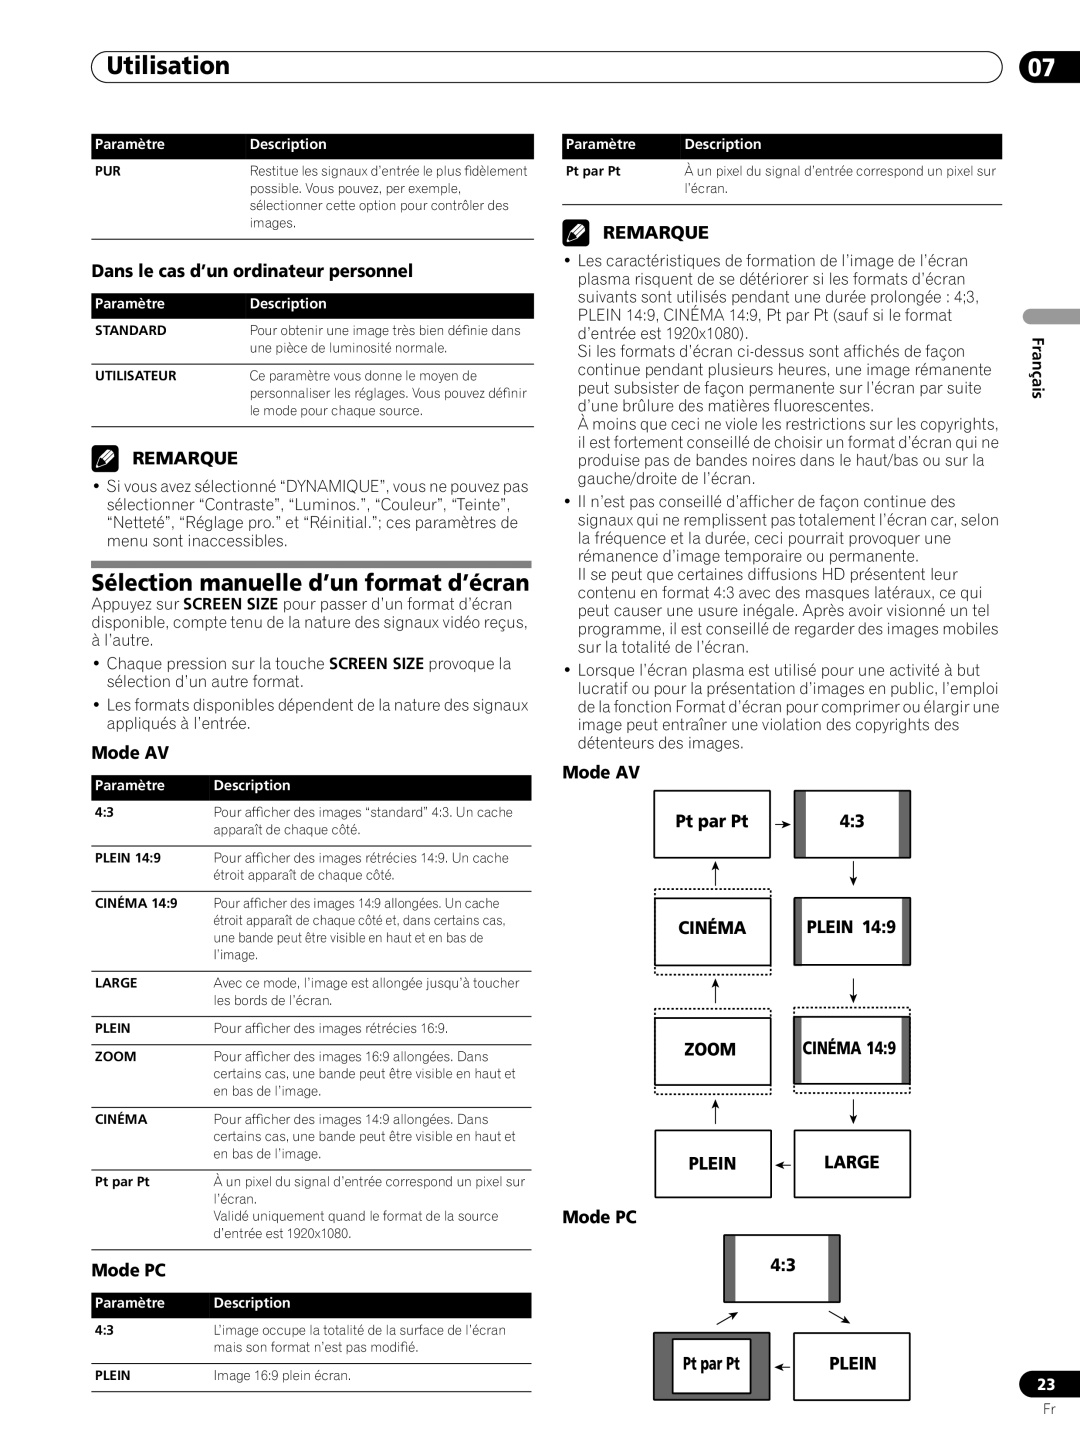 Pioneer PRO-FHD1 Sélection manuelle d’un format d’écran, Utilisation, Dans le cas d’un ordinateur personnel, Remarque 